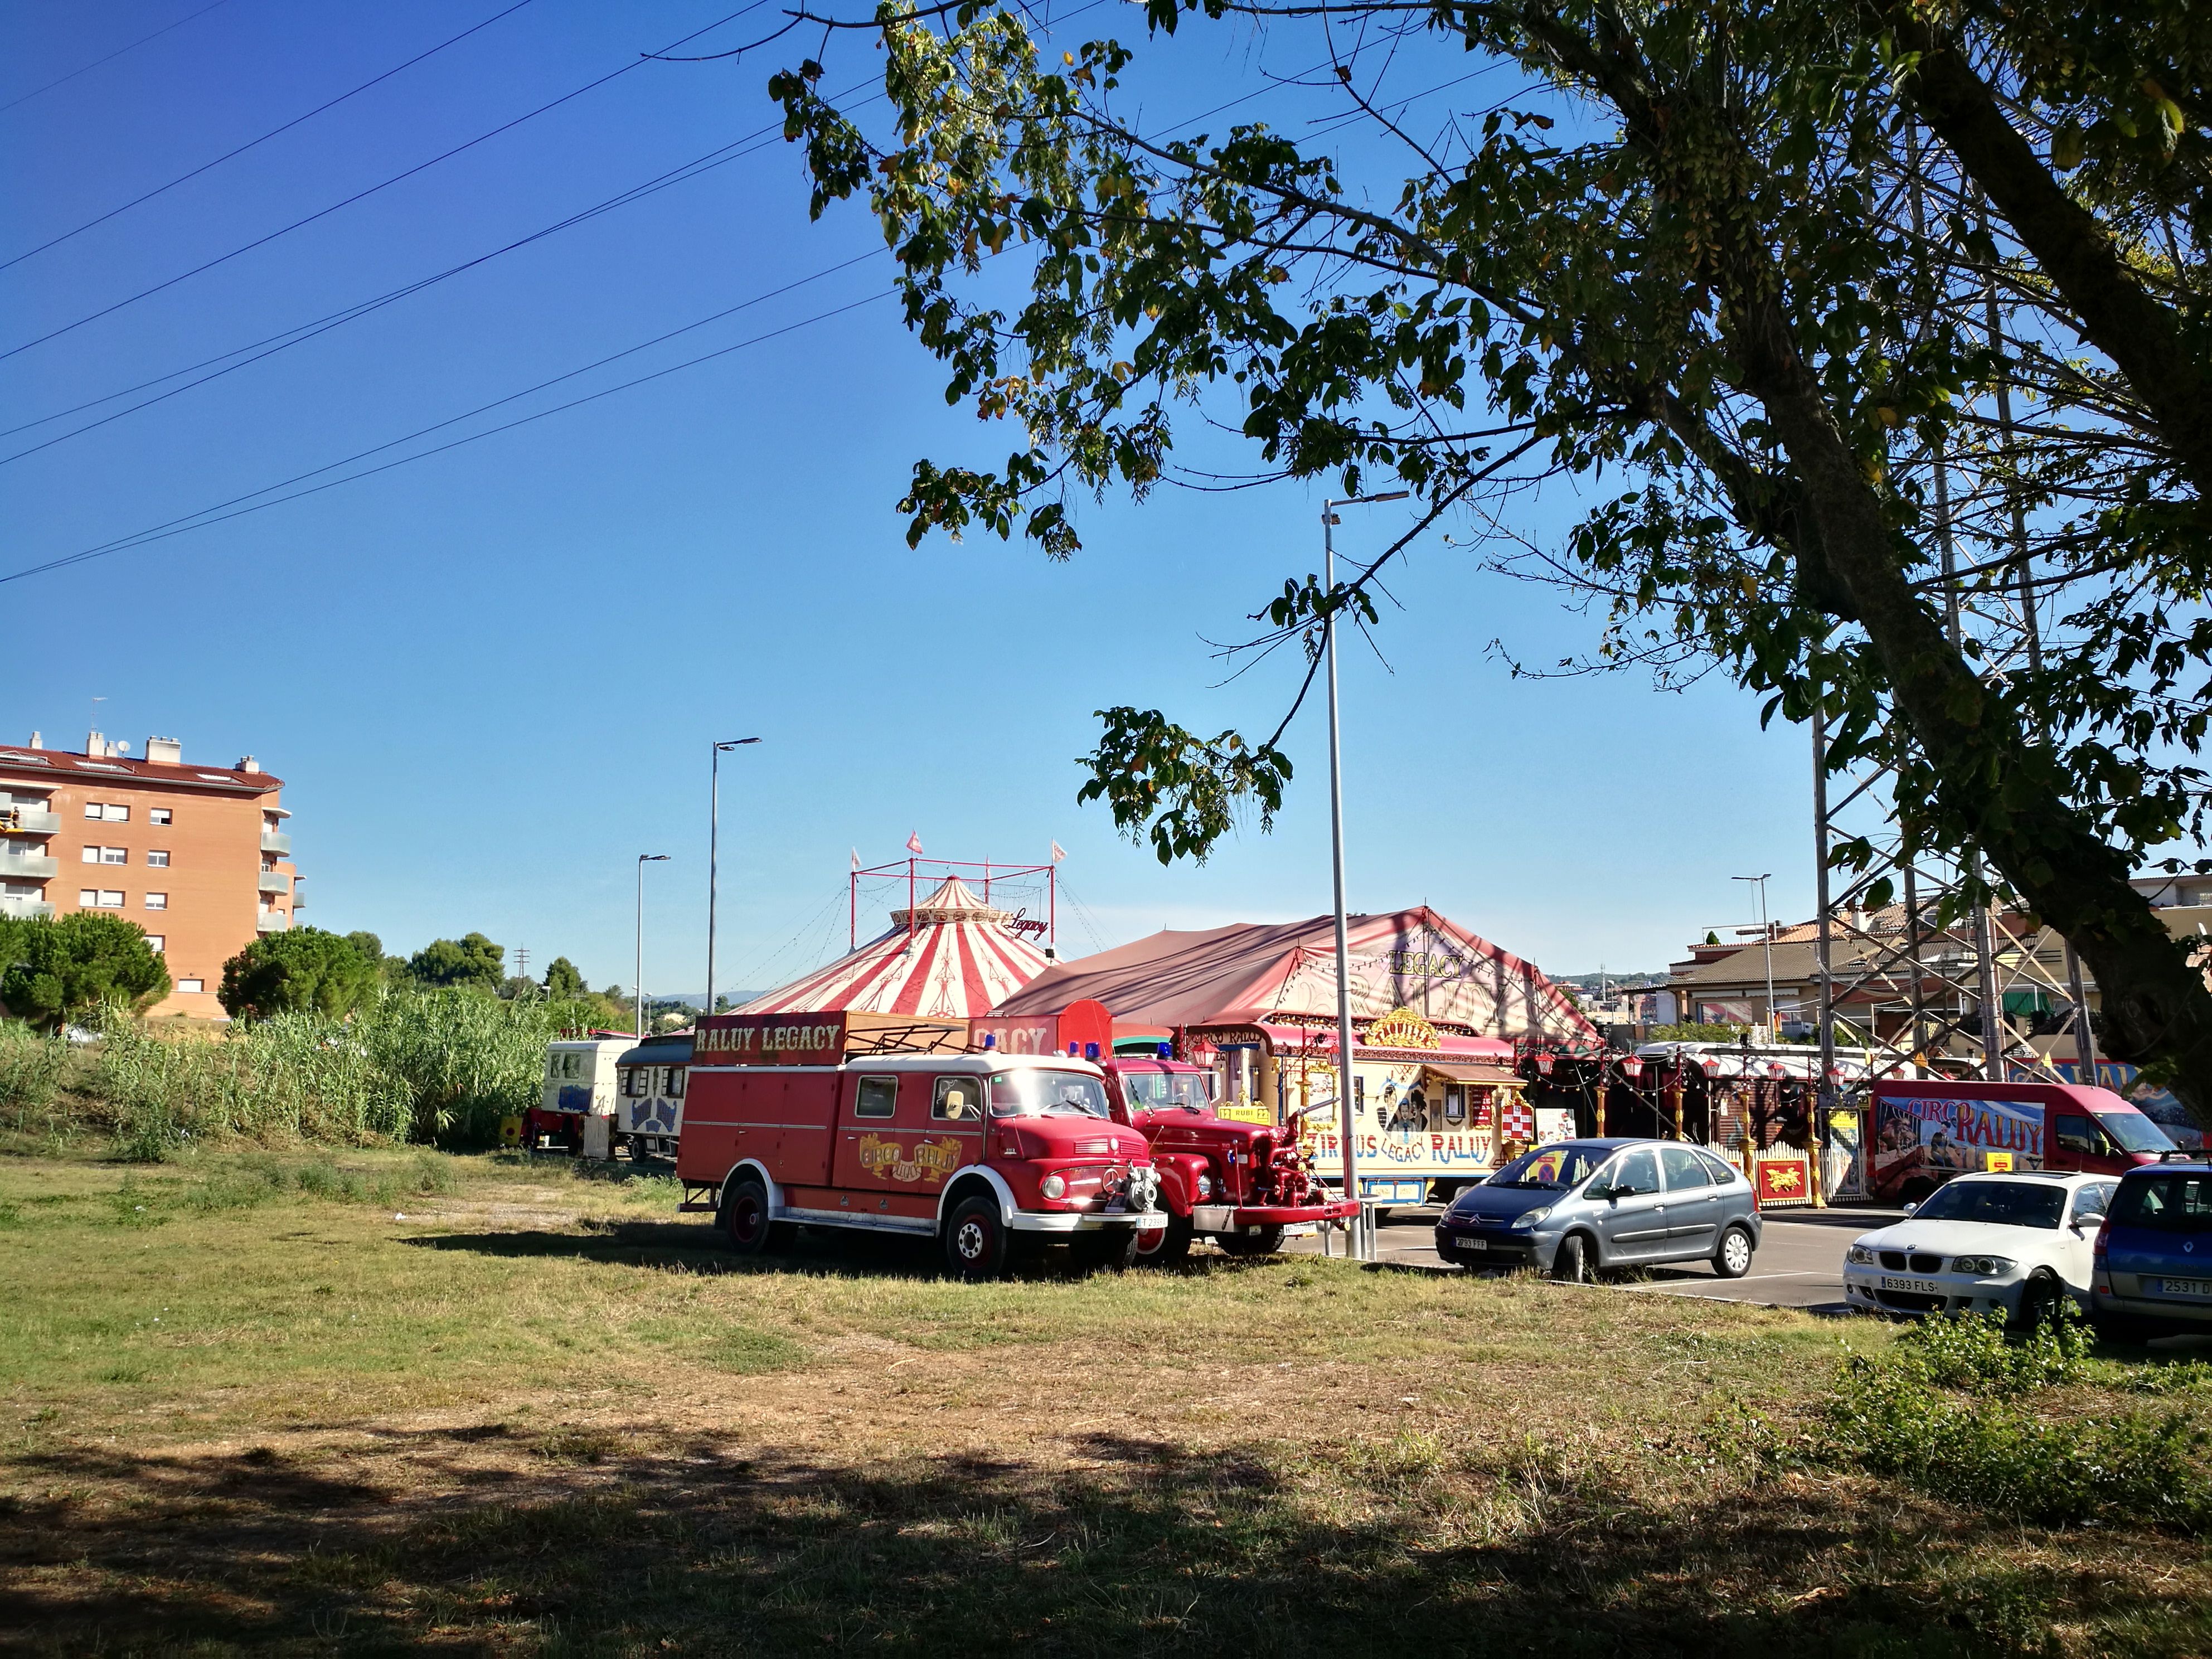 Les caravanes i la carpa del circ a Can Fatjo, Rubí